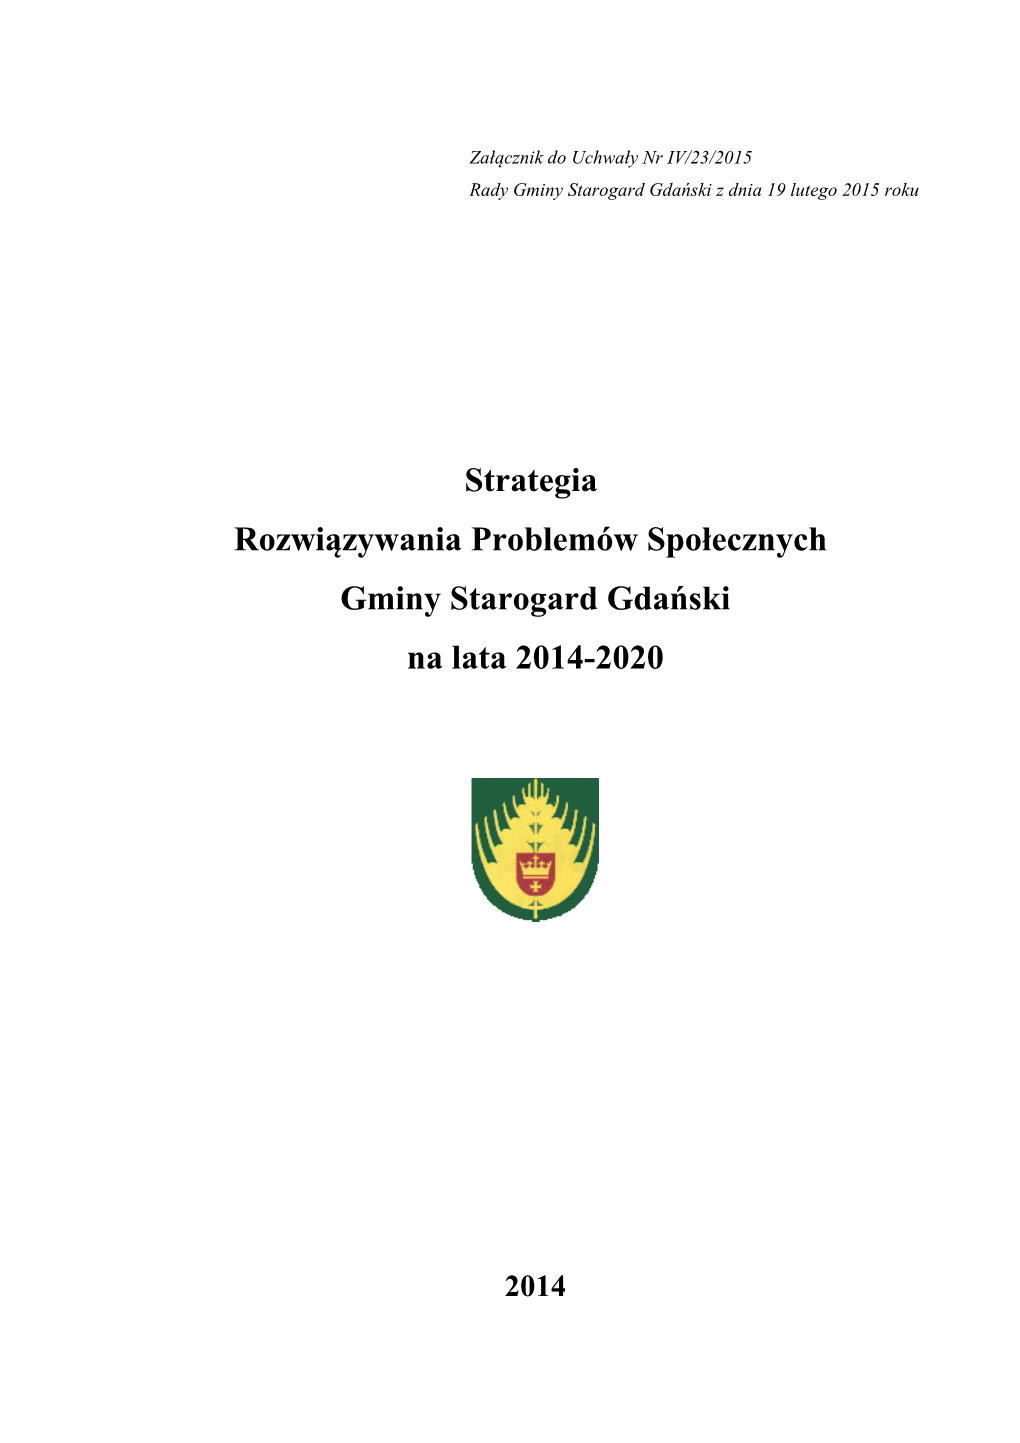 Strategia Rozwiązywania Problemów Społecznych Gminy Starogard Gdański Na Lata 2014-2020